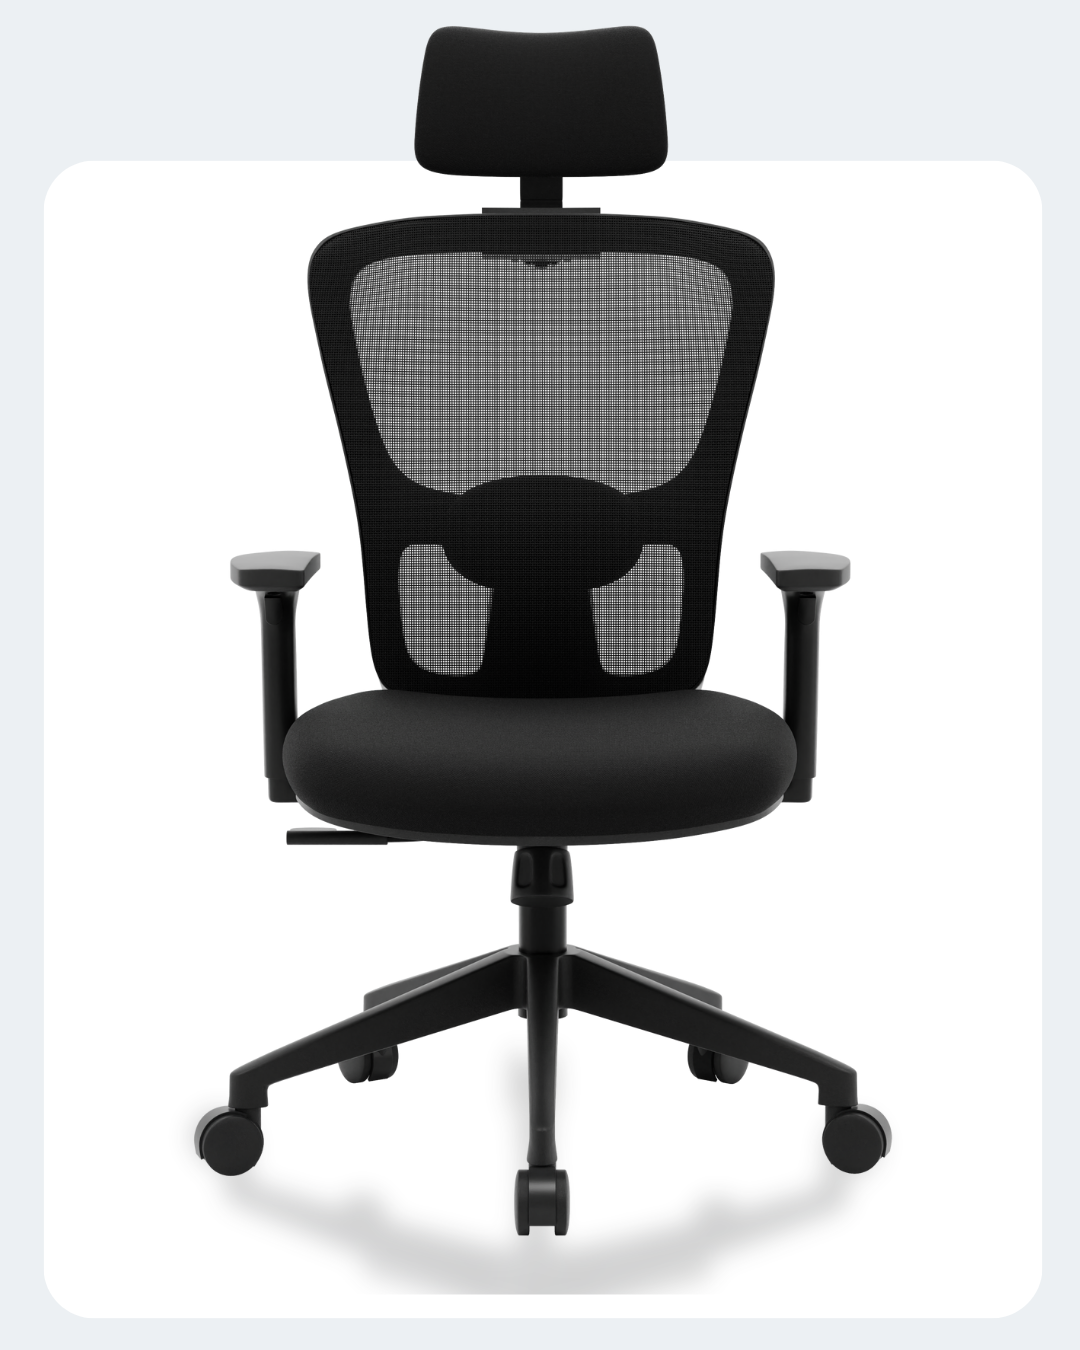 Buy Jupiter Go High Back Mesh Office Chair Online